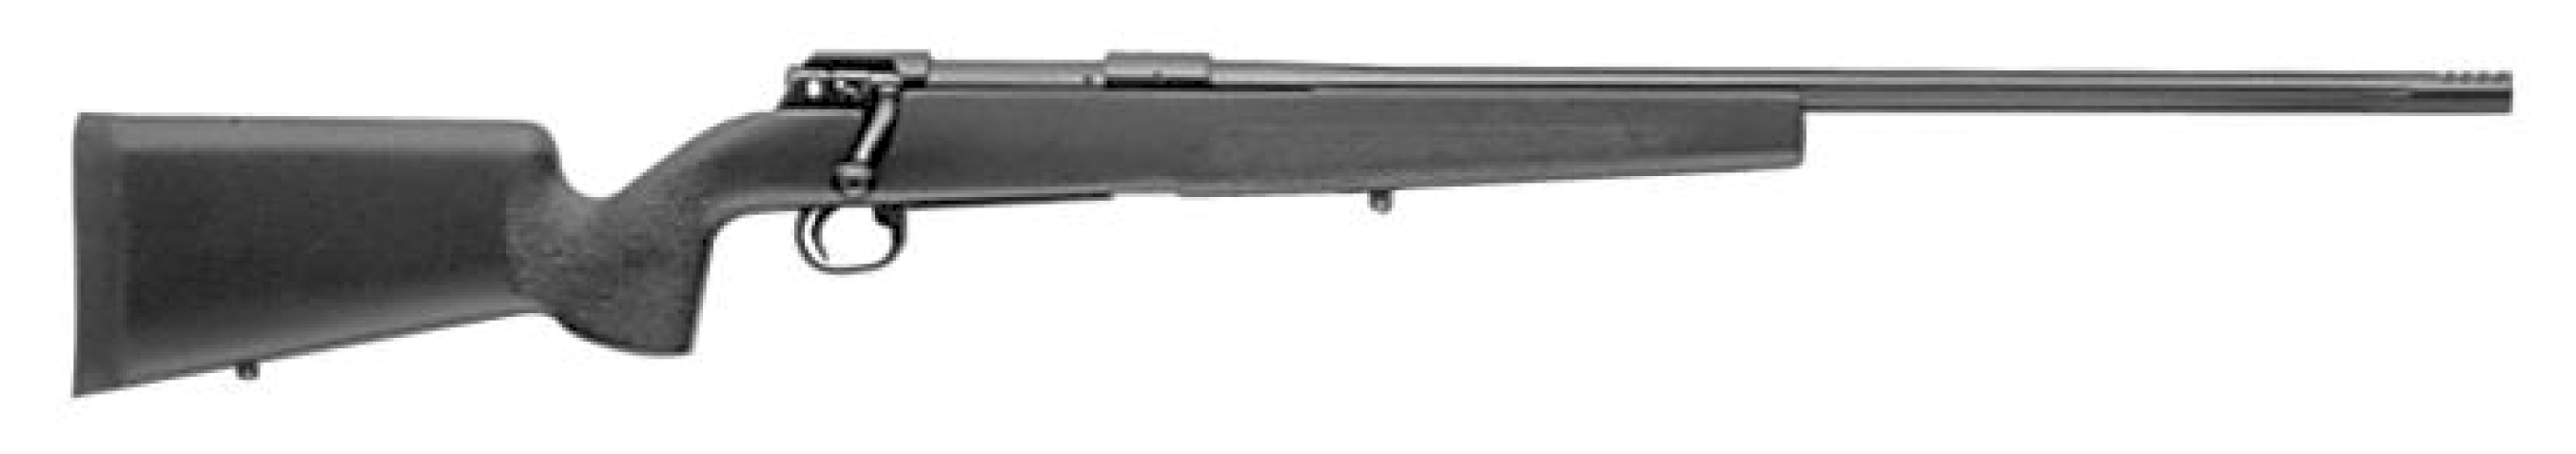 Model SHR 970 Tactical